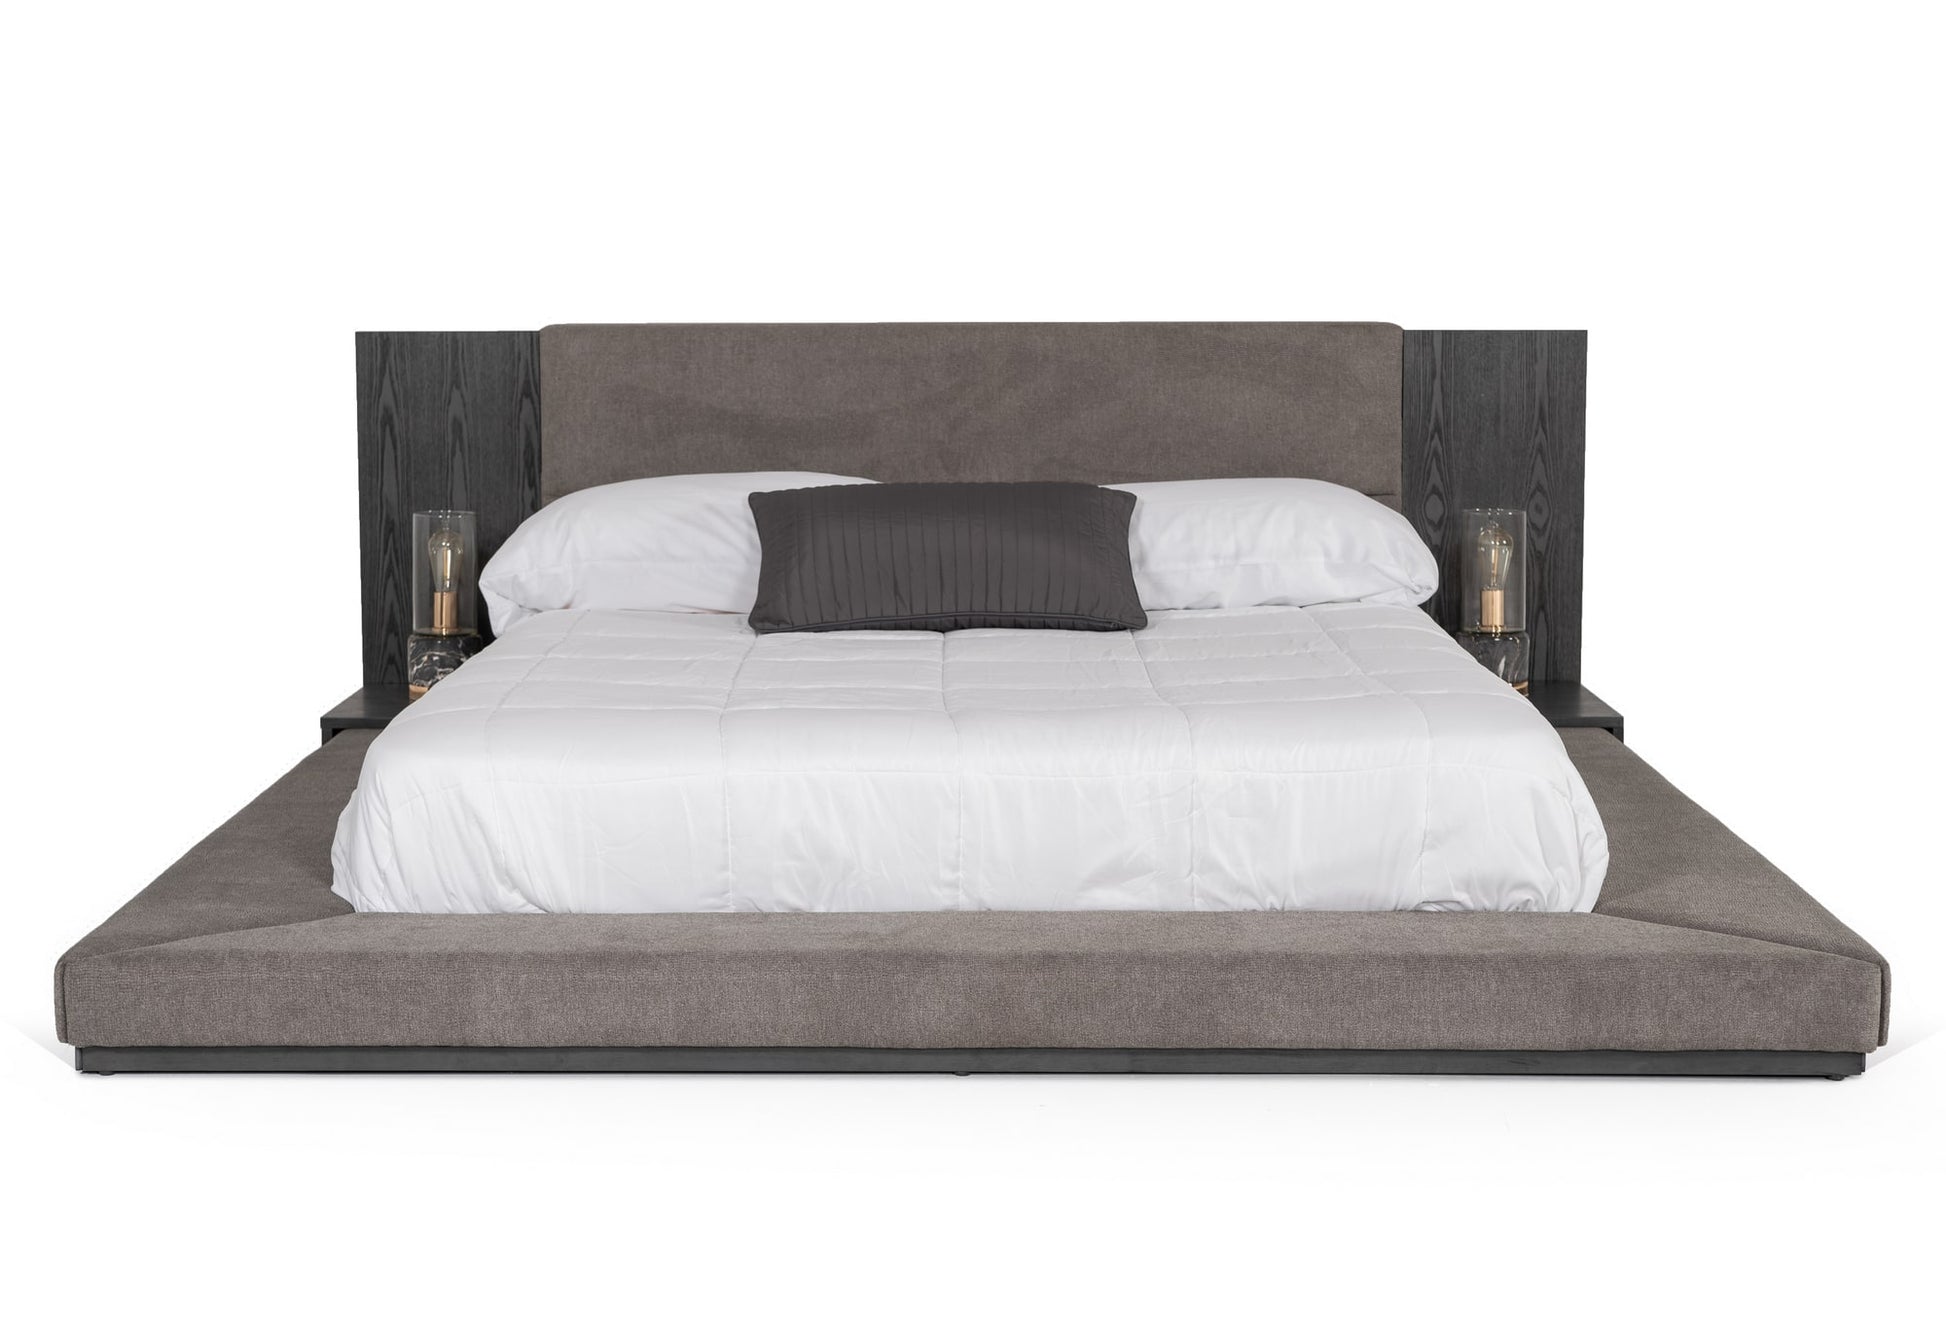 VIG Furniture Nova Domus Jagger Grey Bedroom Set